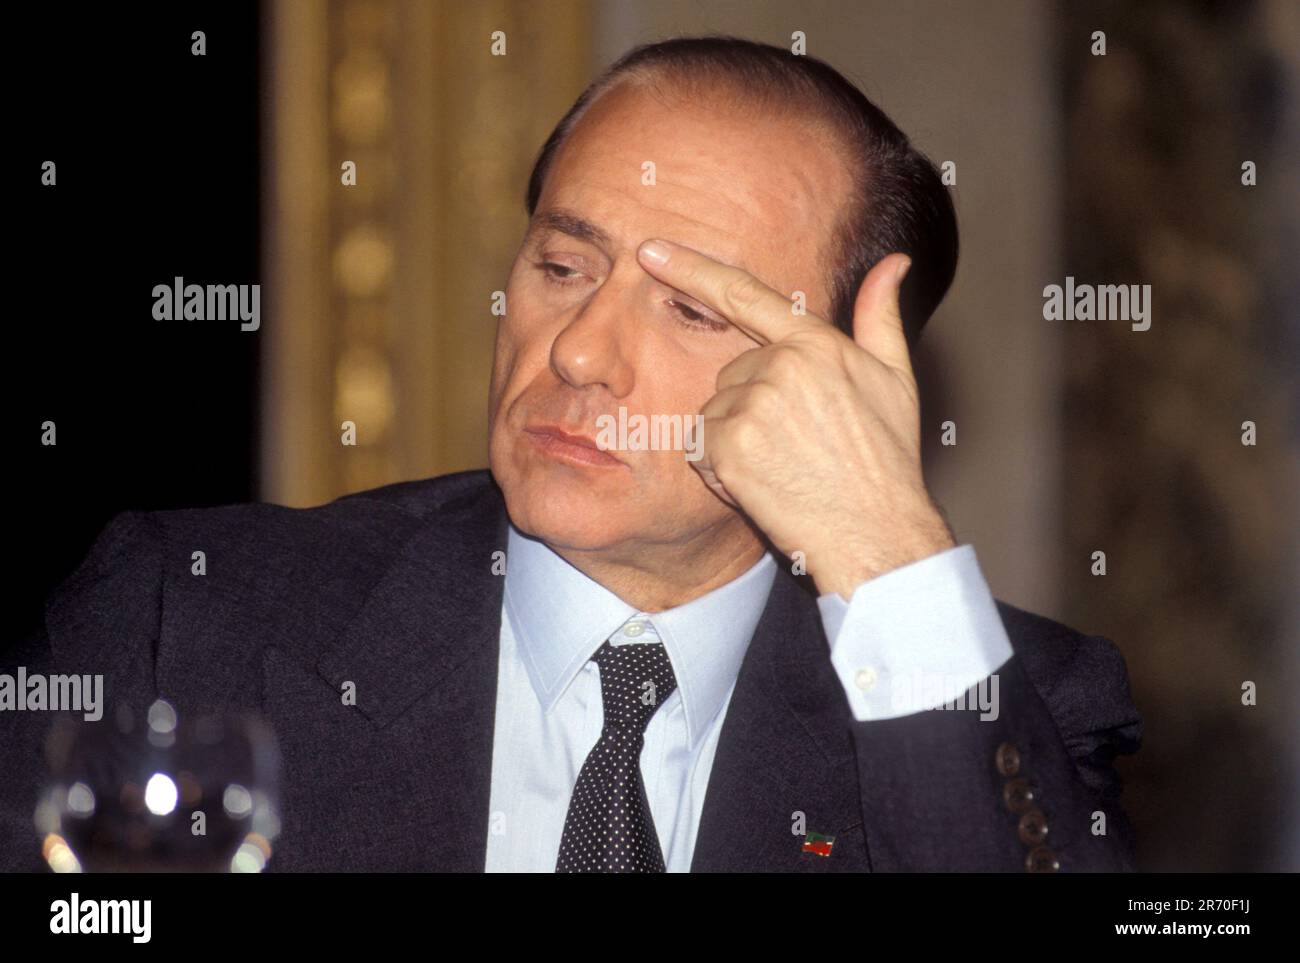 Milano, Italy. 16th July, 2014. Milano - Silvio Berlusconi - archivio anni  90nella foto : Silvio Berlusconi Credit: Independent Photo Agency/Alamy  Live News Stock Photo - Alamy